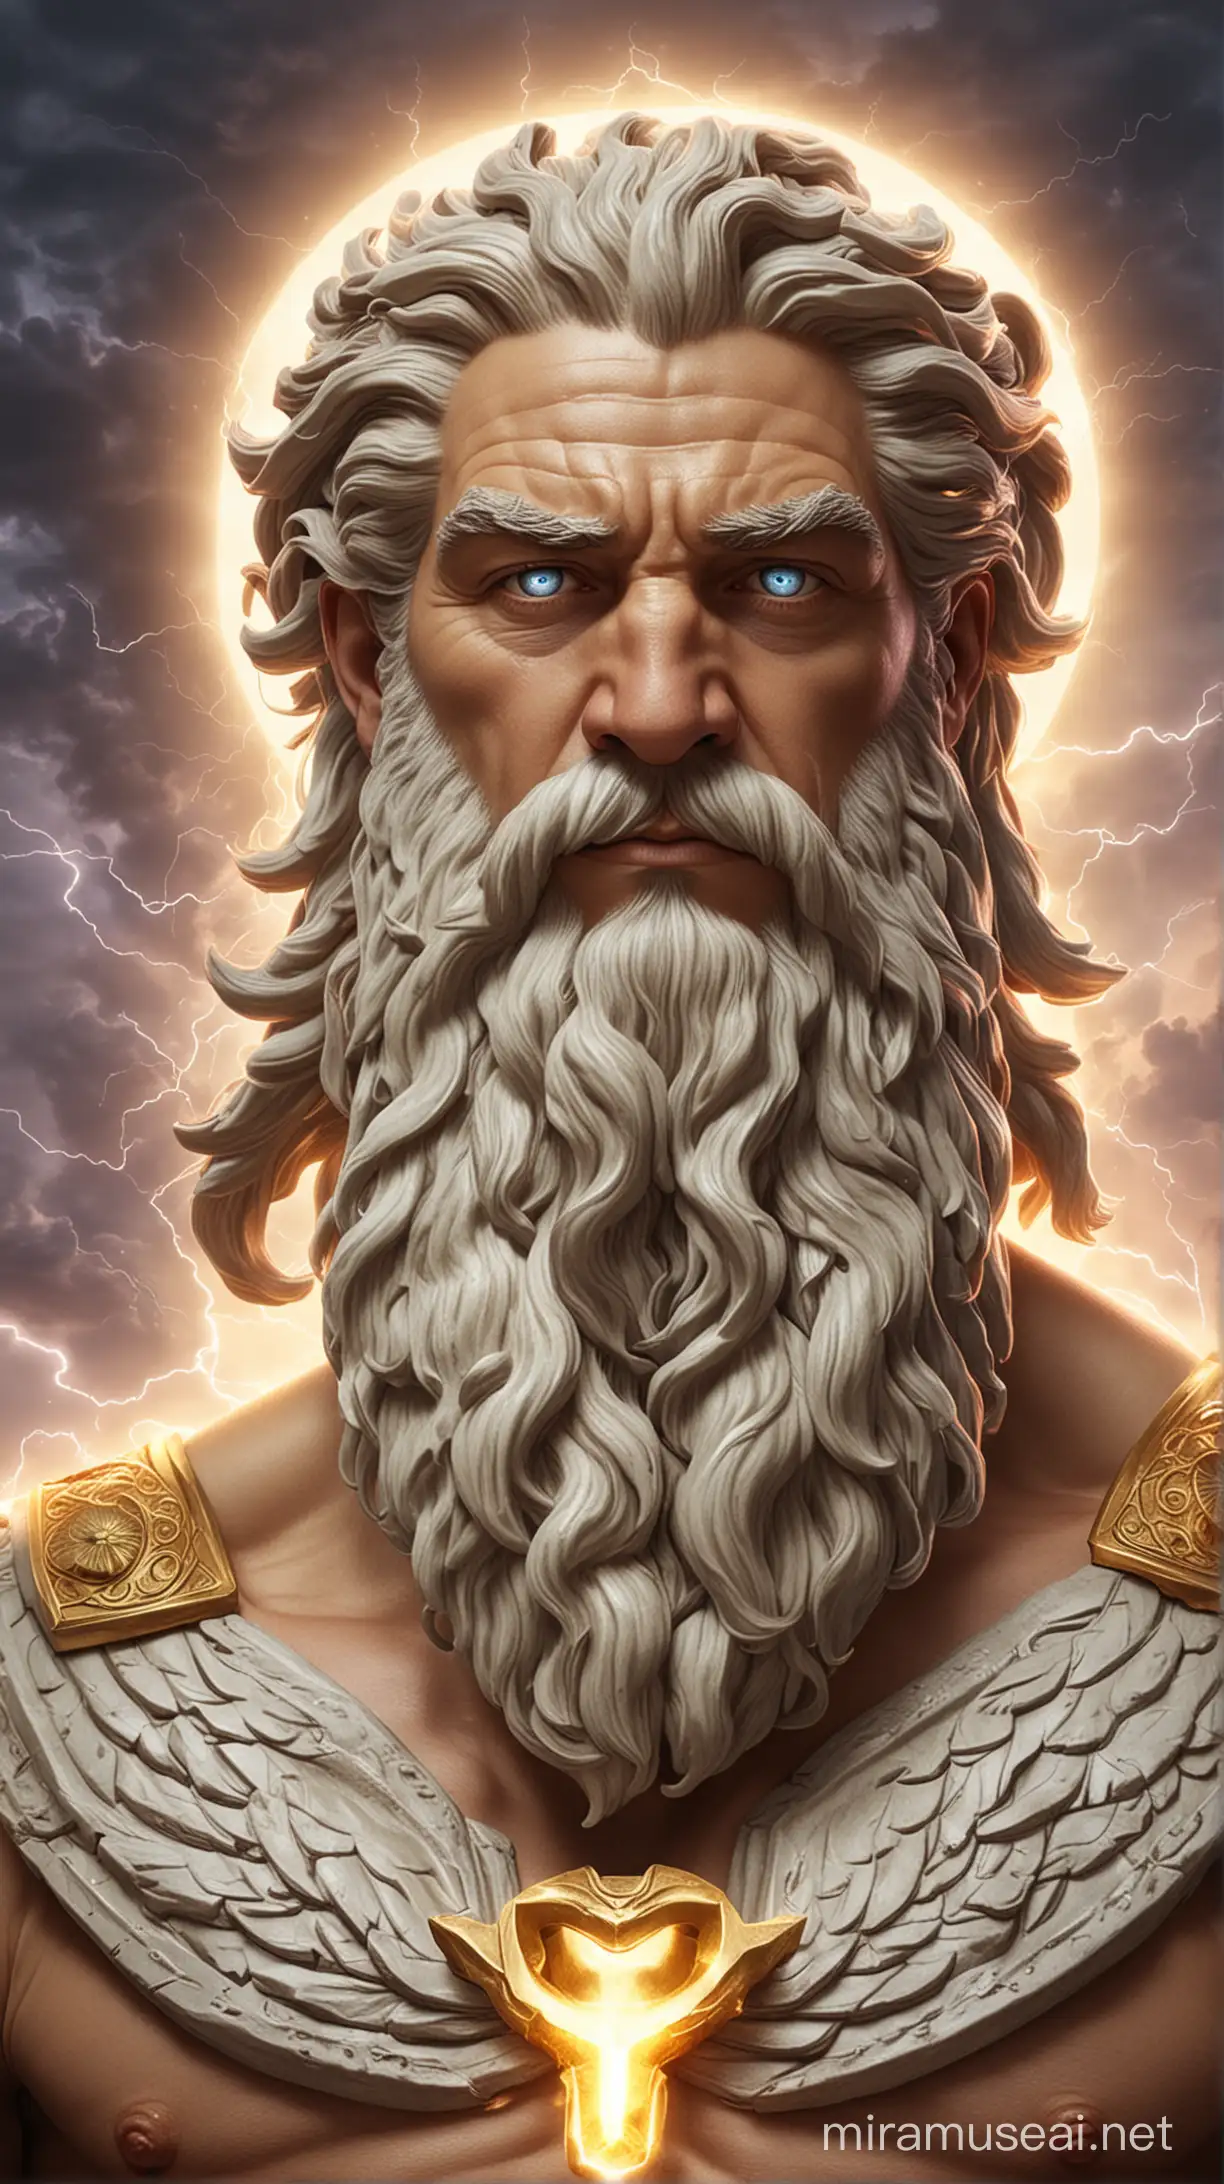 Zeus,